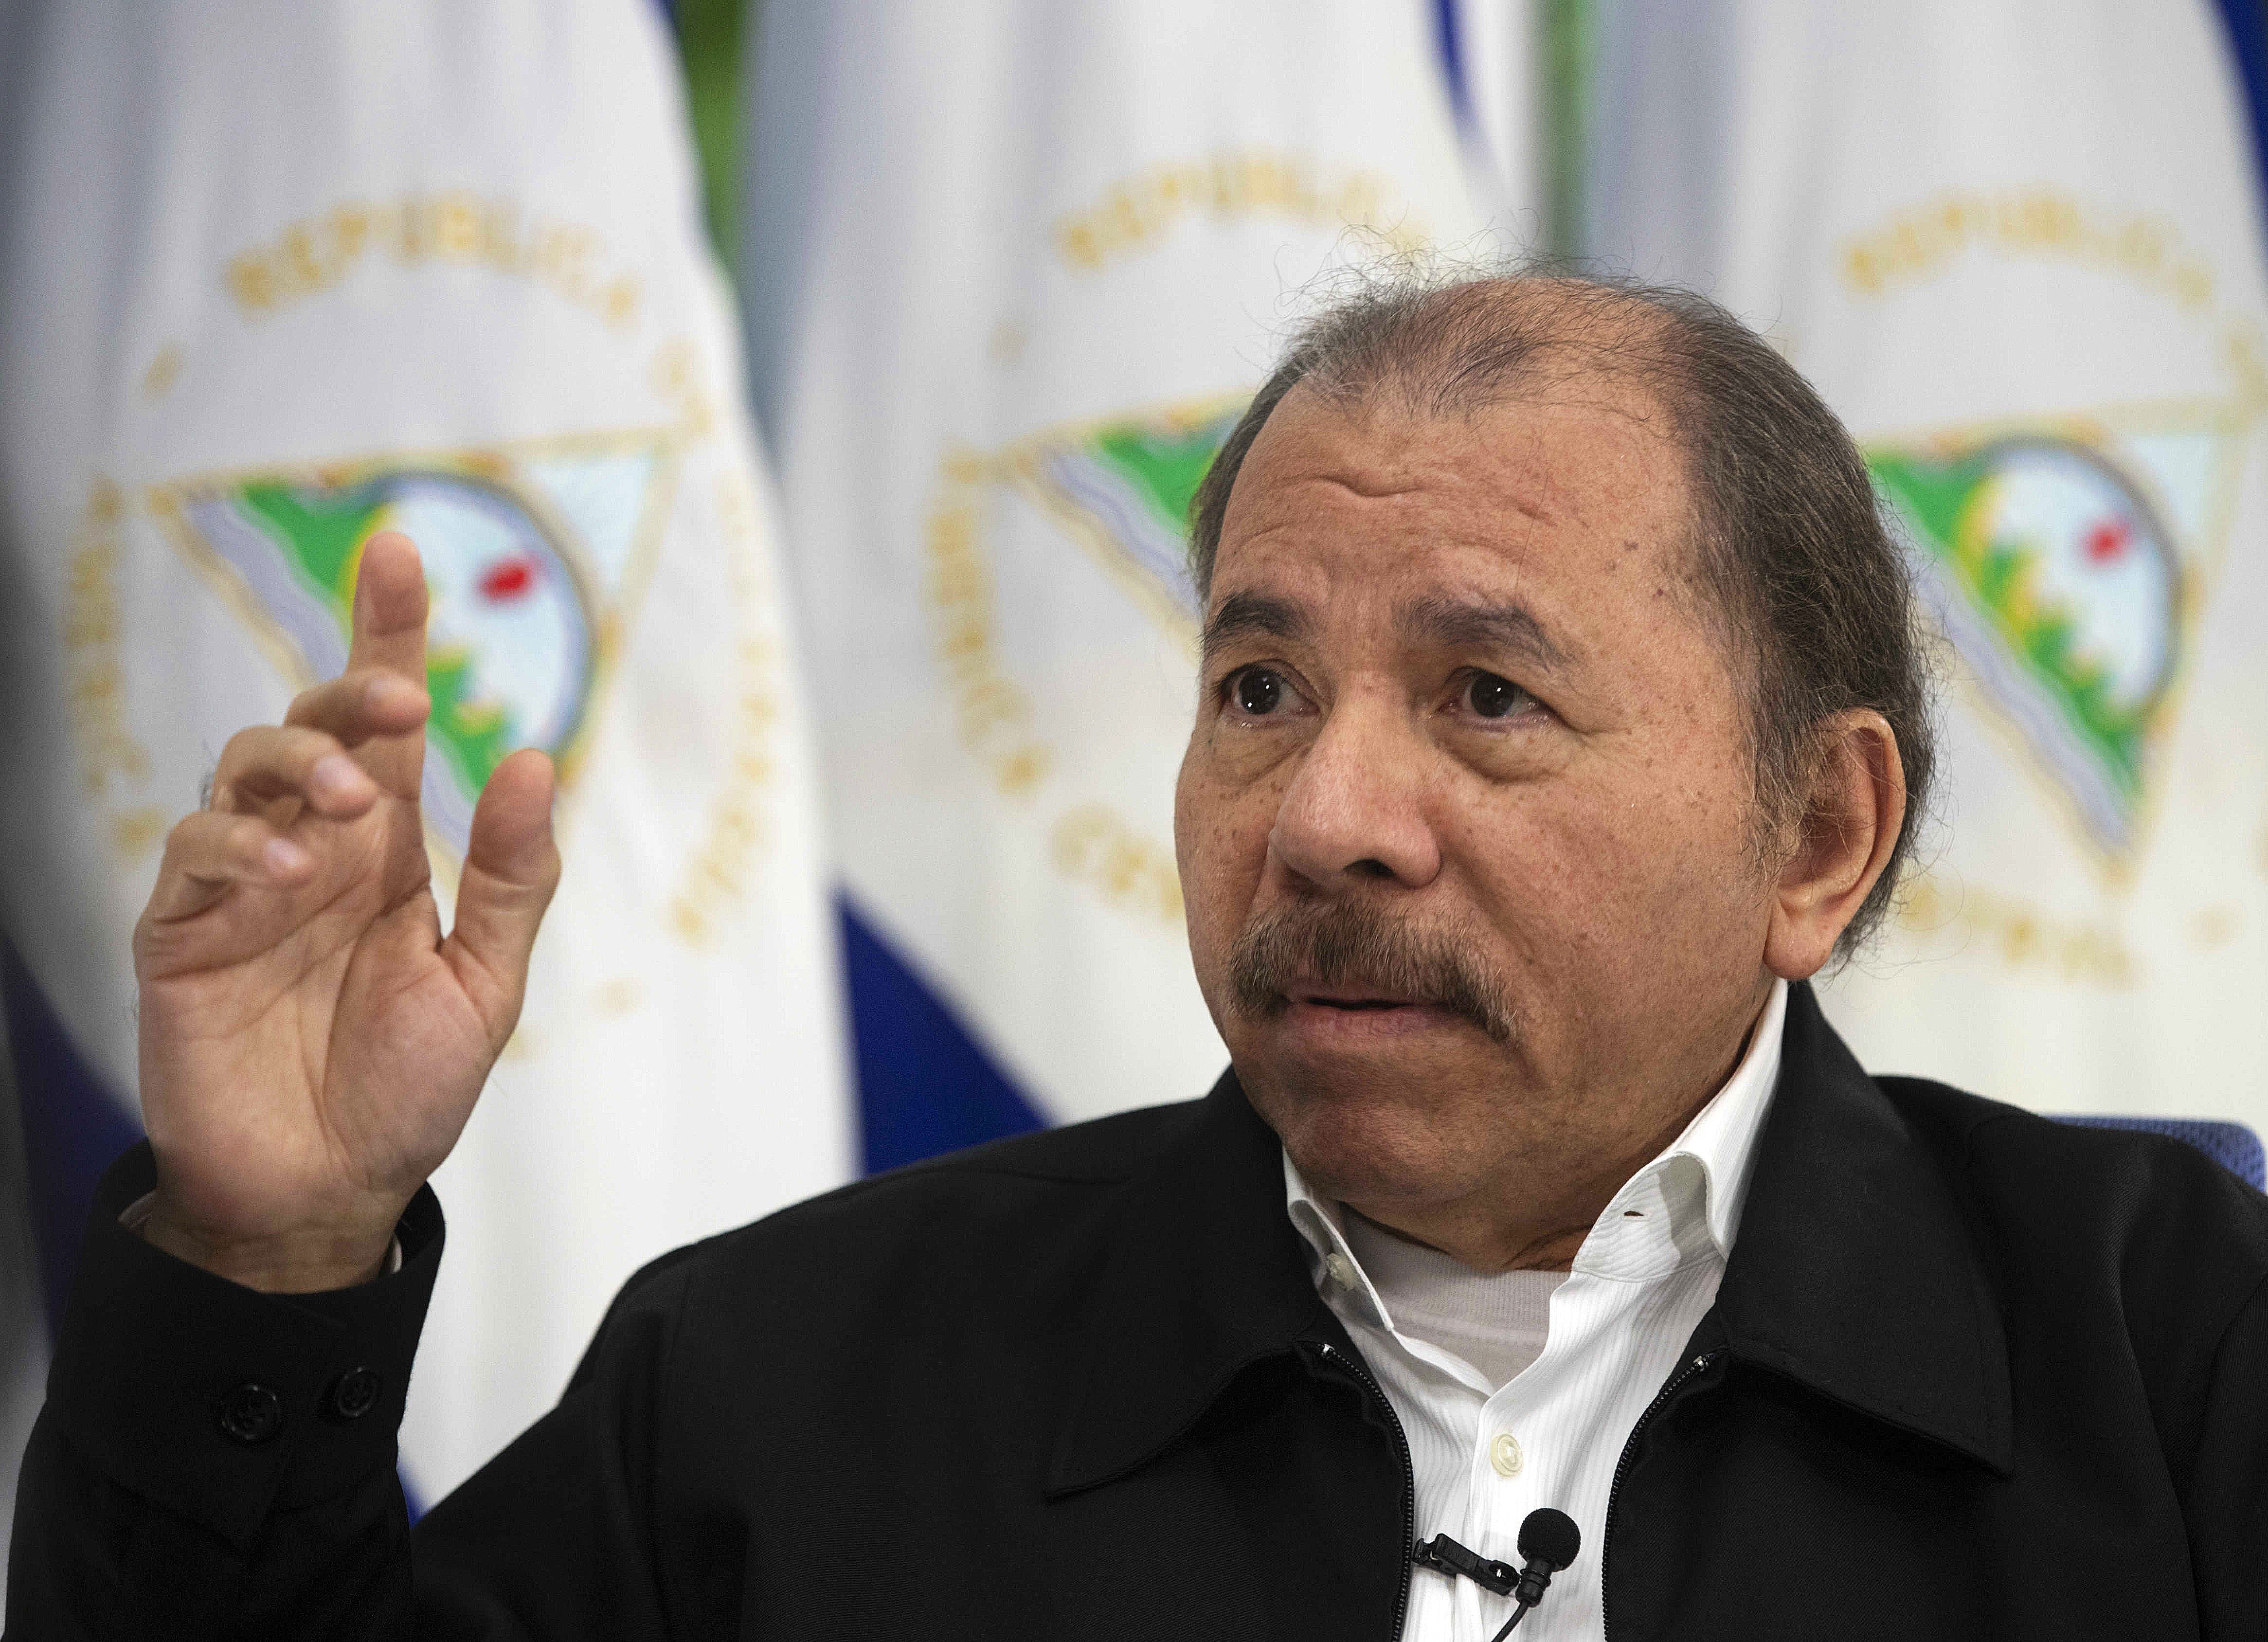 Daniel Ortega cede y convoca a una negociación para resolver la crisis en Nicaragua